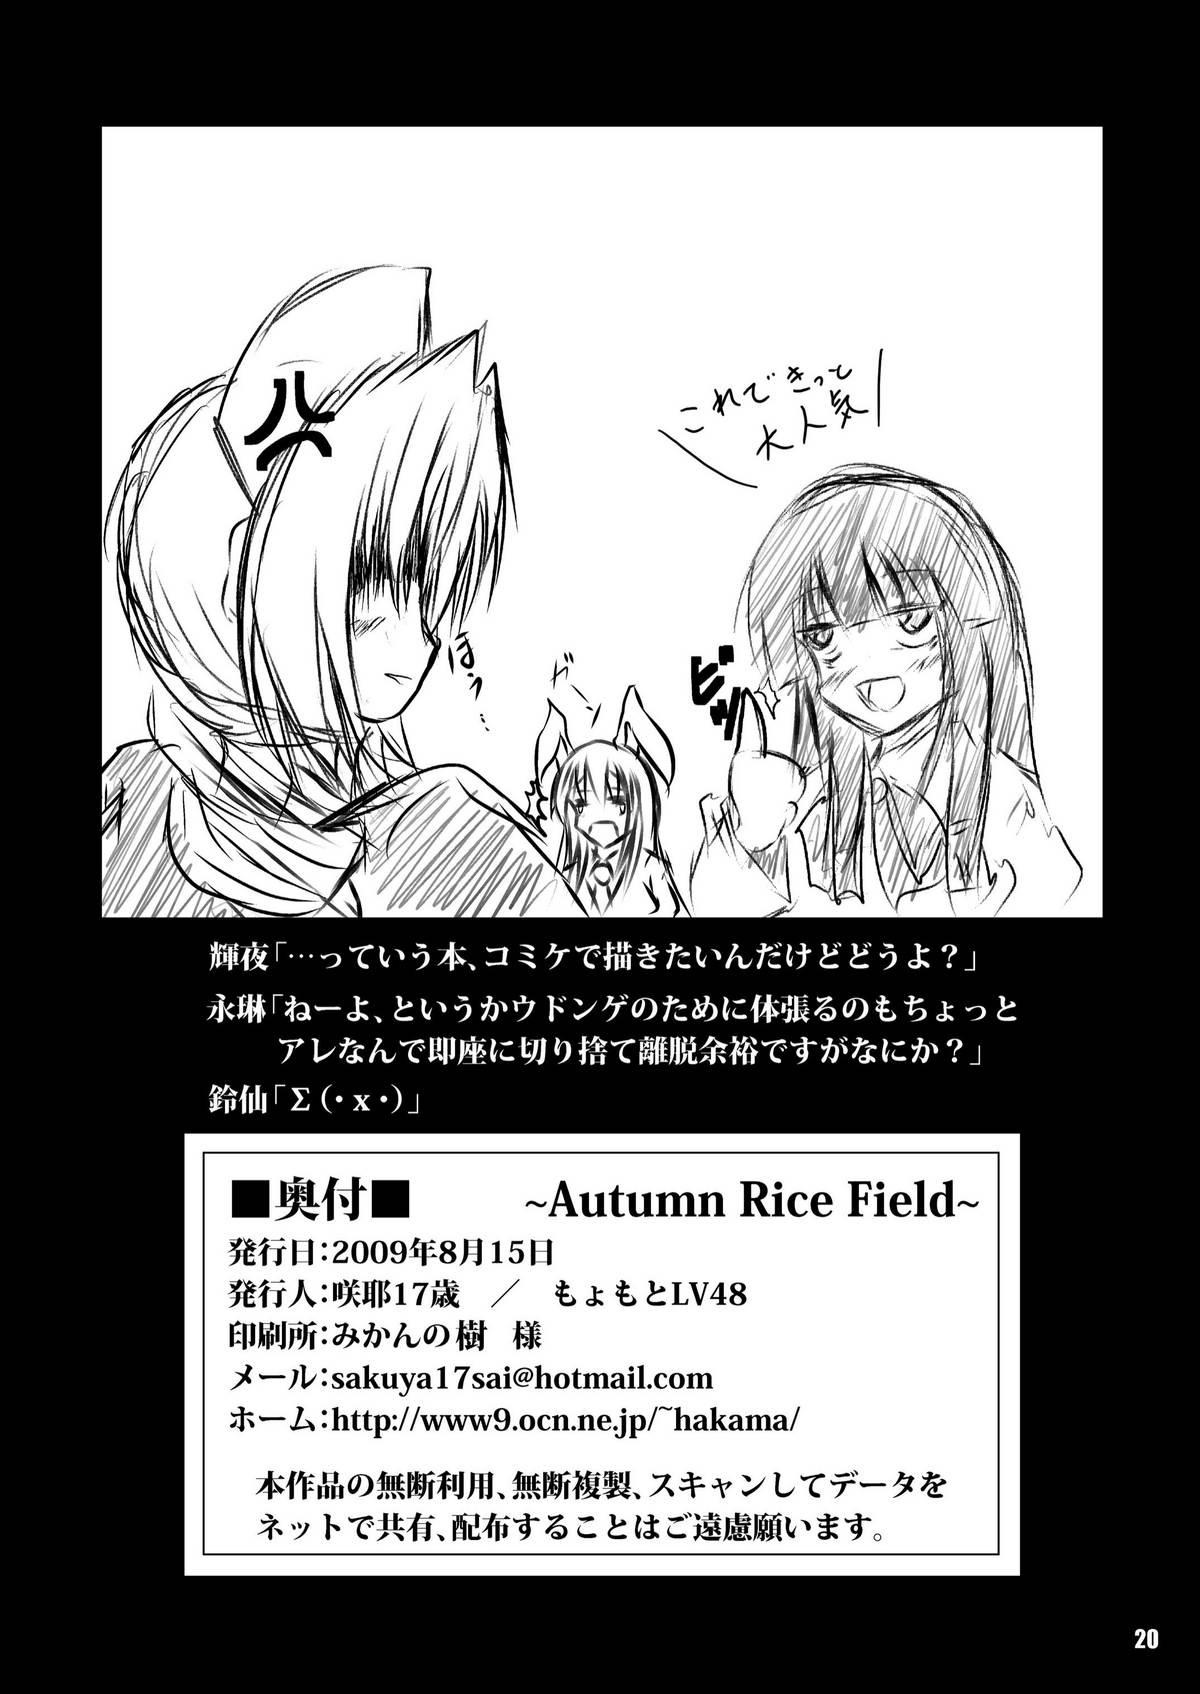 Autumn Rice Field 21